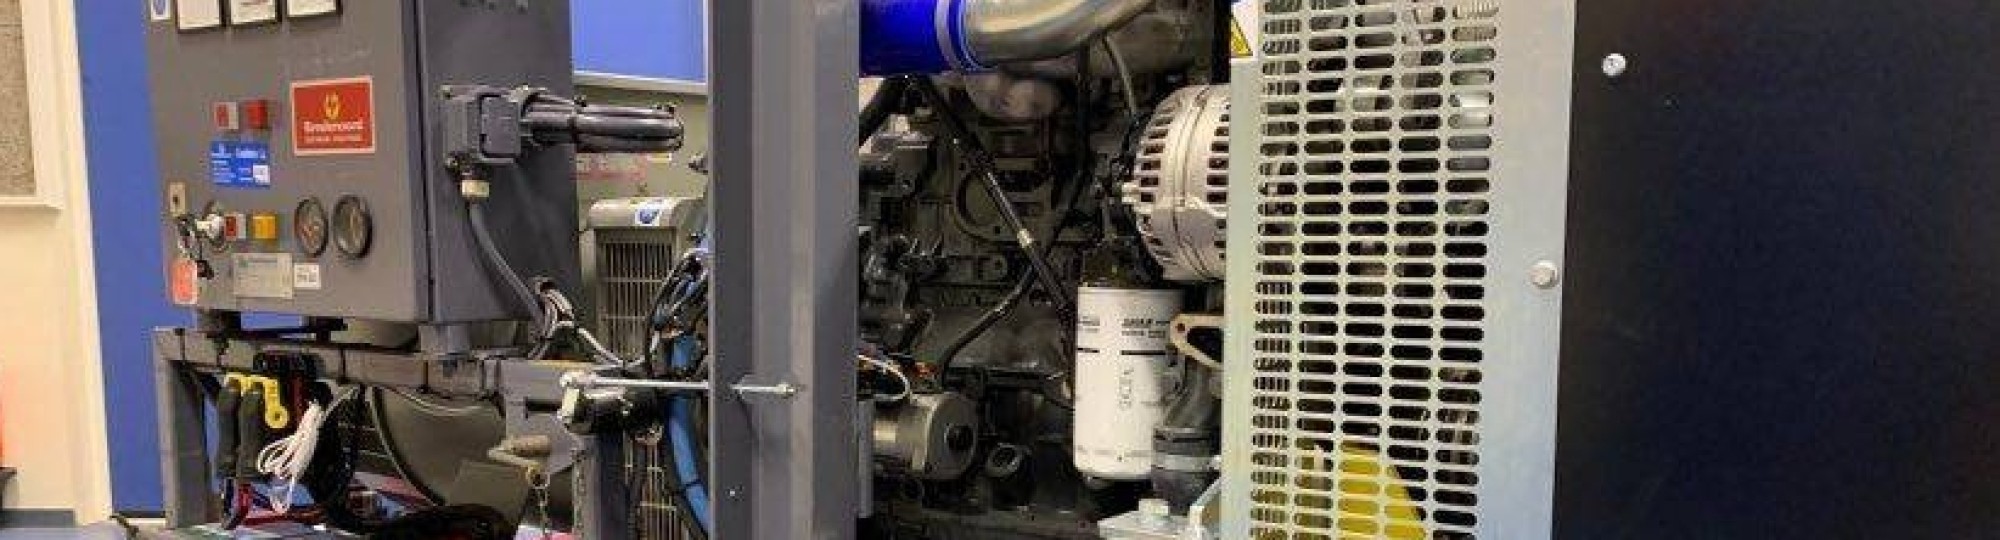 Generatorset met FPT motor is aanwinst bij Automotive Research